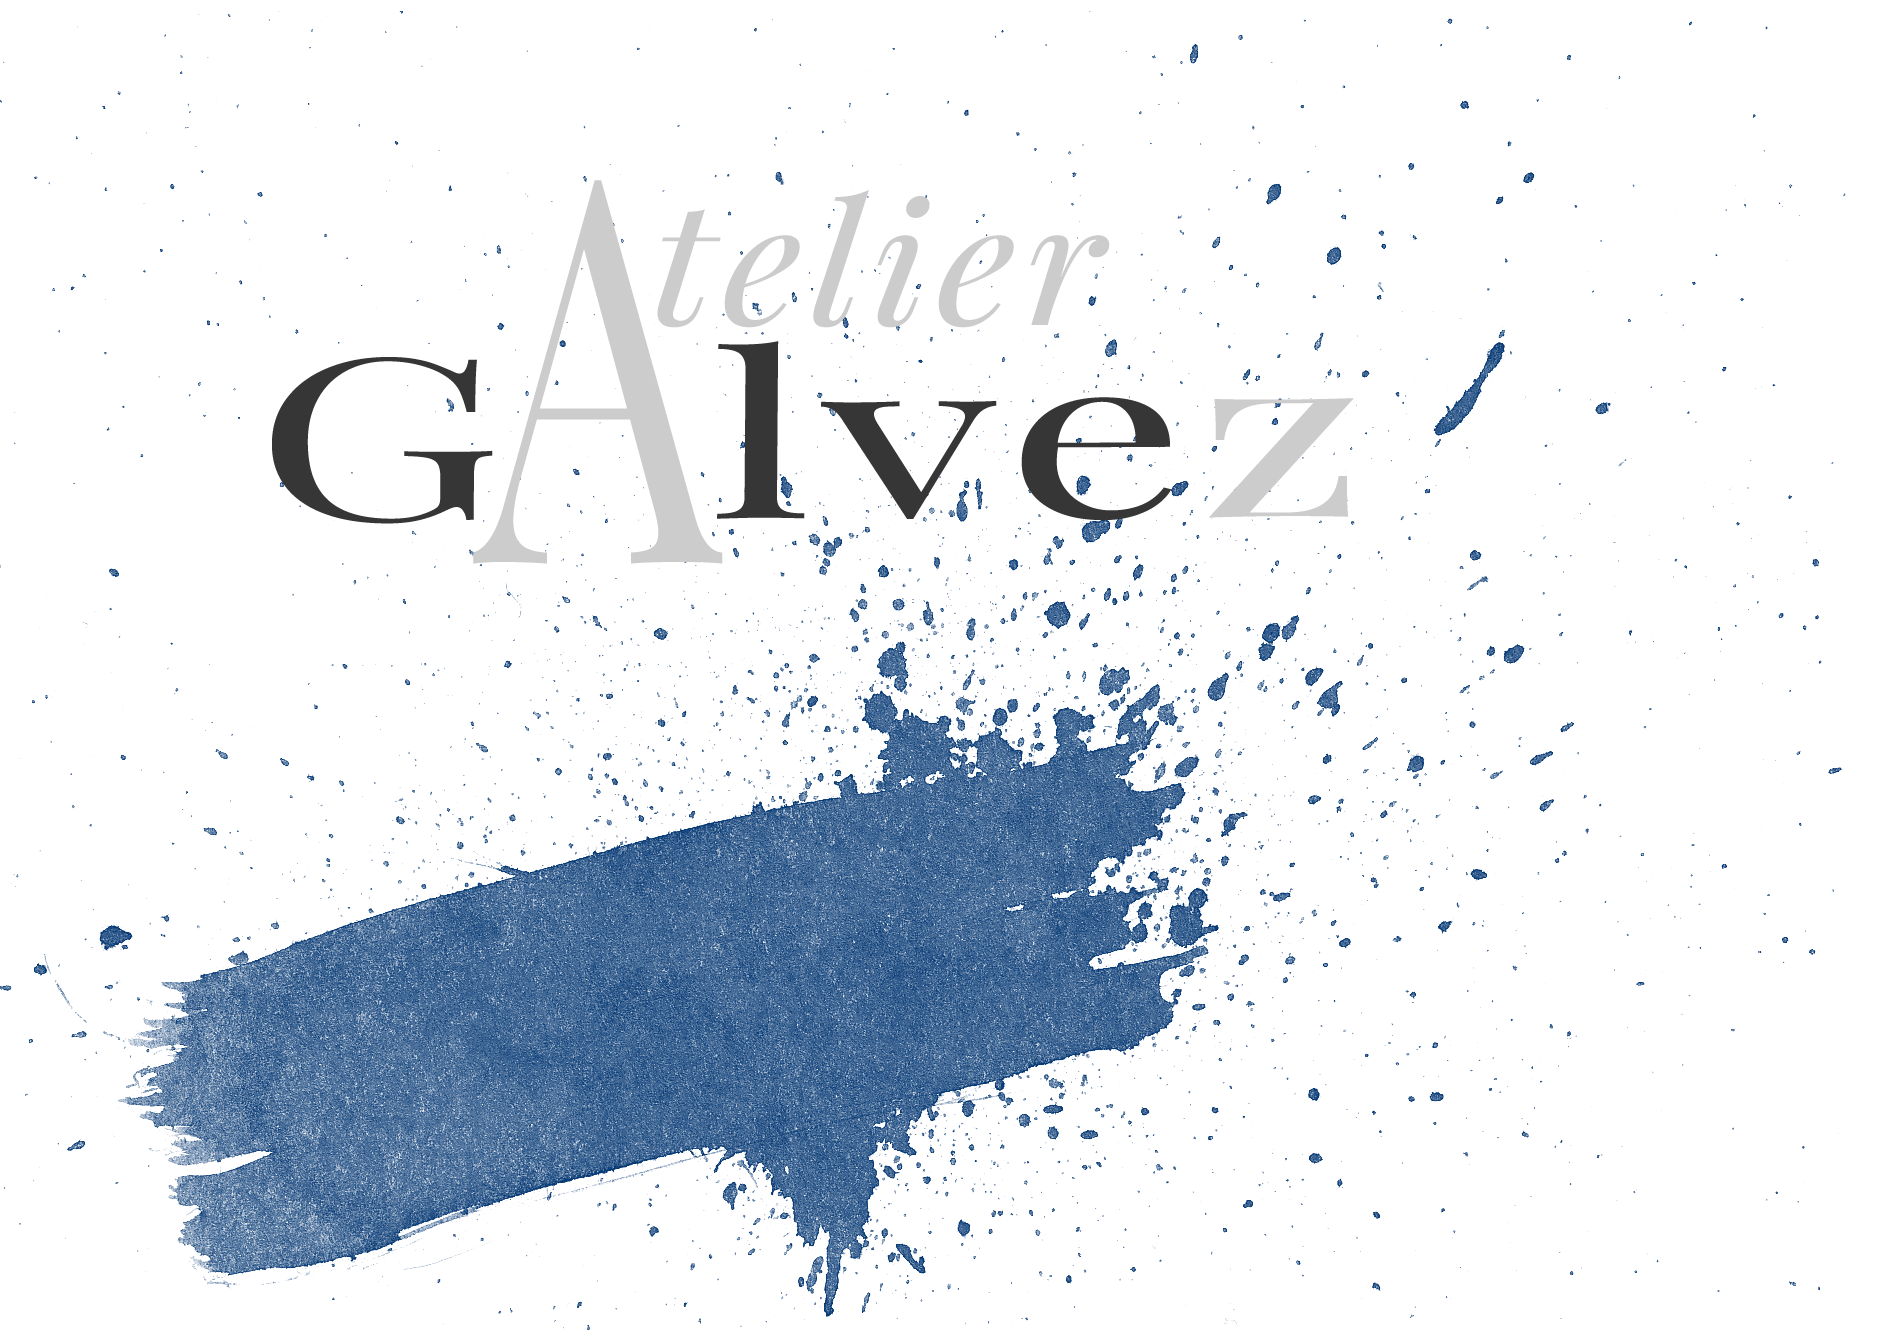 Atelier Galvez